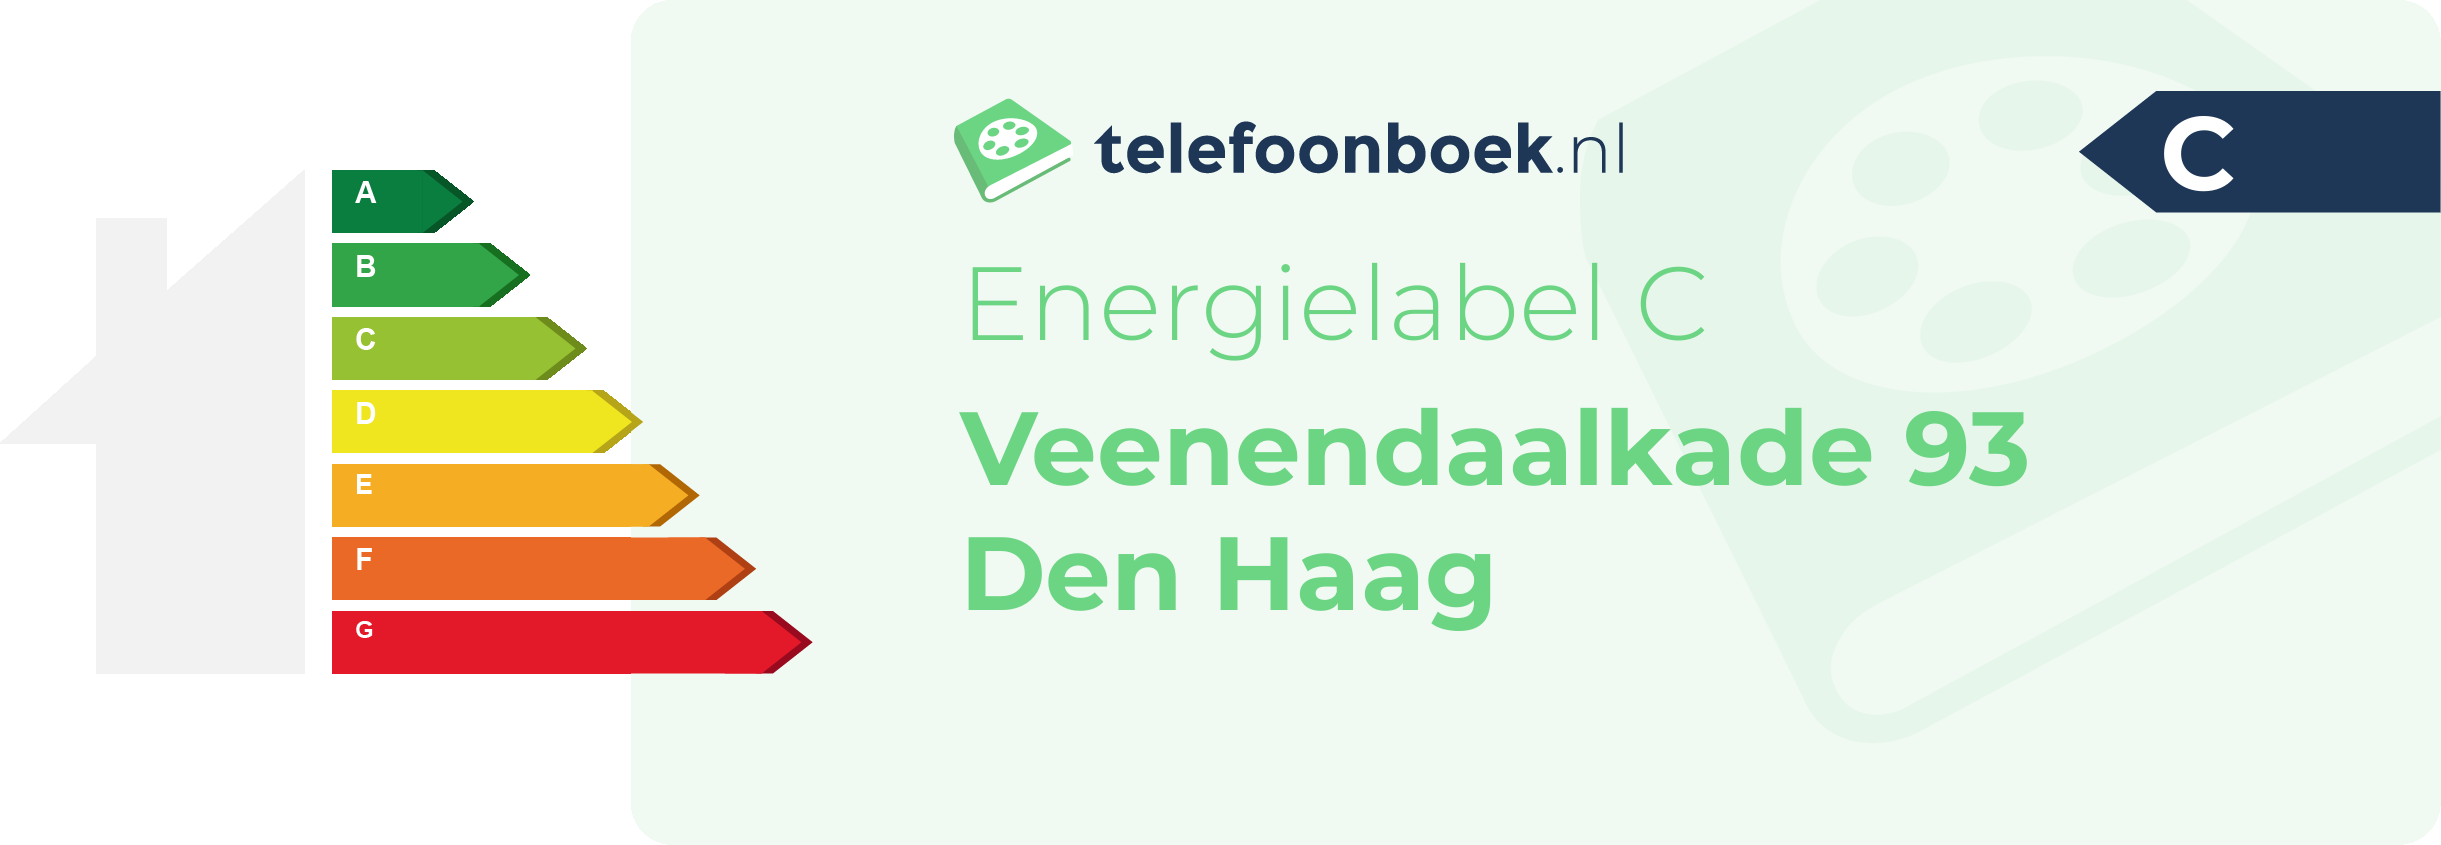 Energielabel Veenendaalkade 93 Den Haag